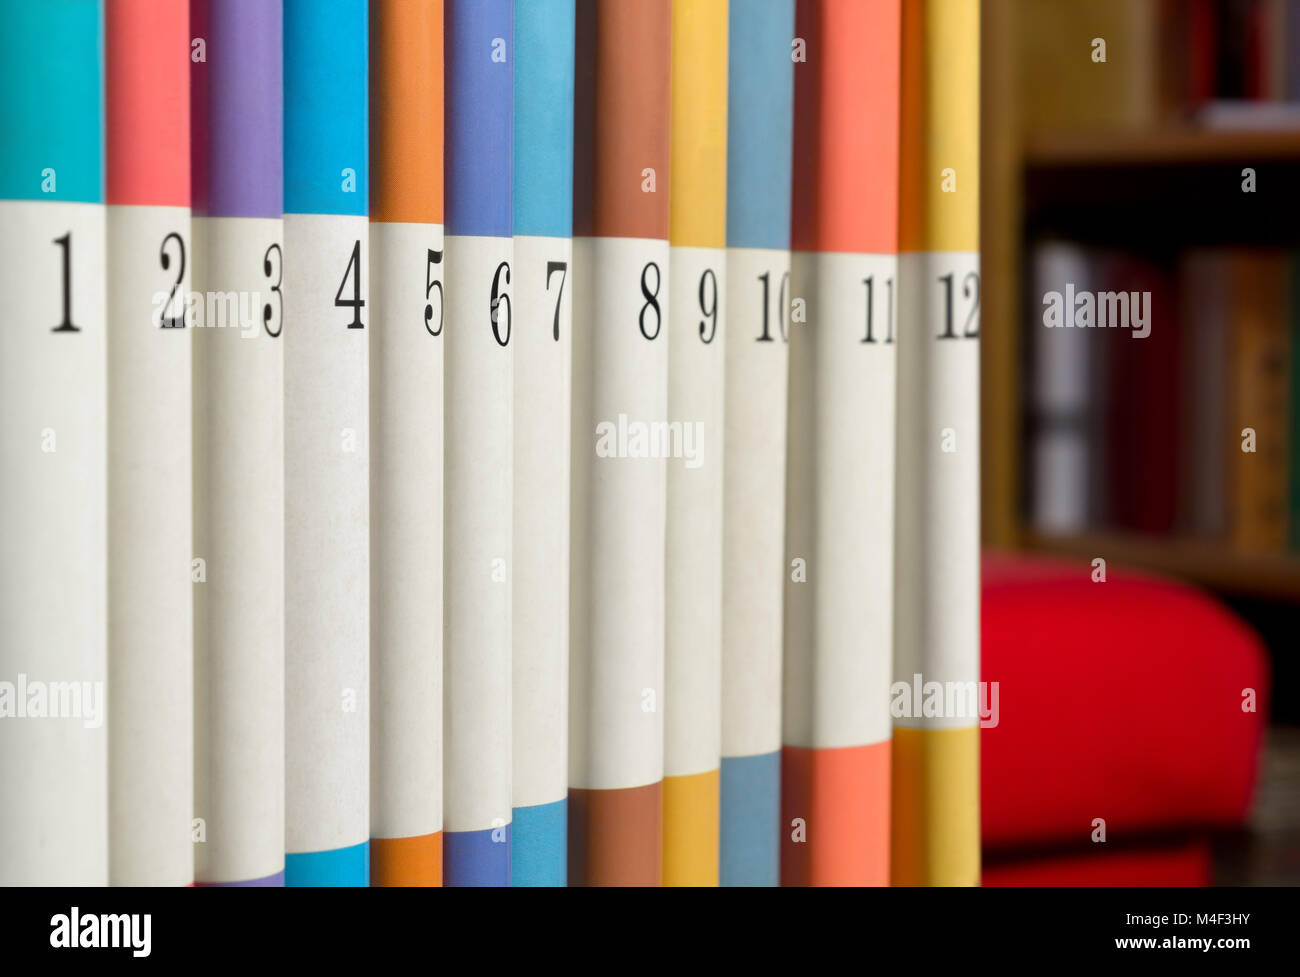 12 nummerierte Bücher in einer Reihe mit einem Bücherregal und ein rotes Sofa im Hintergrund Stockfoto